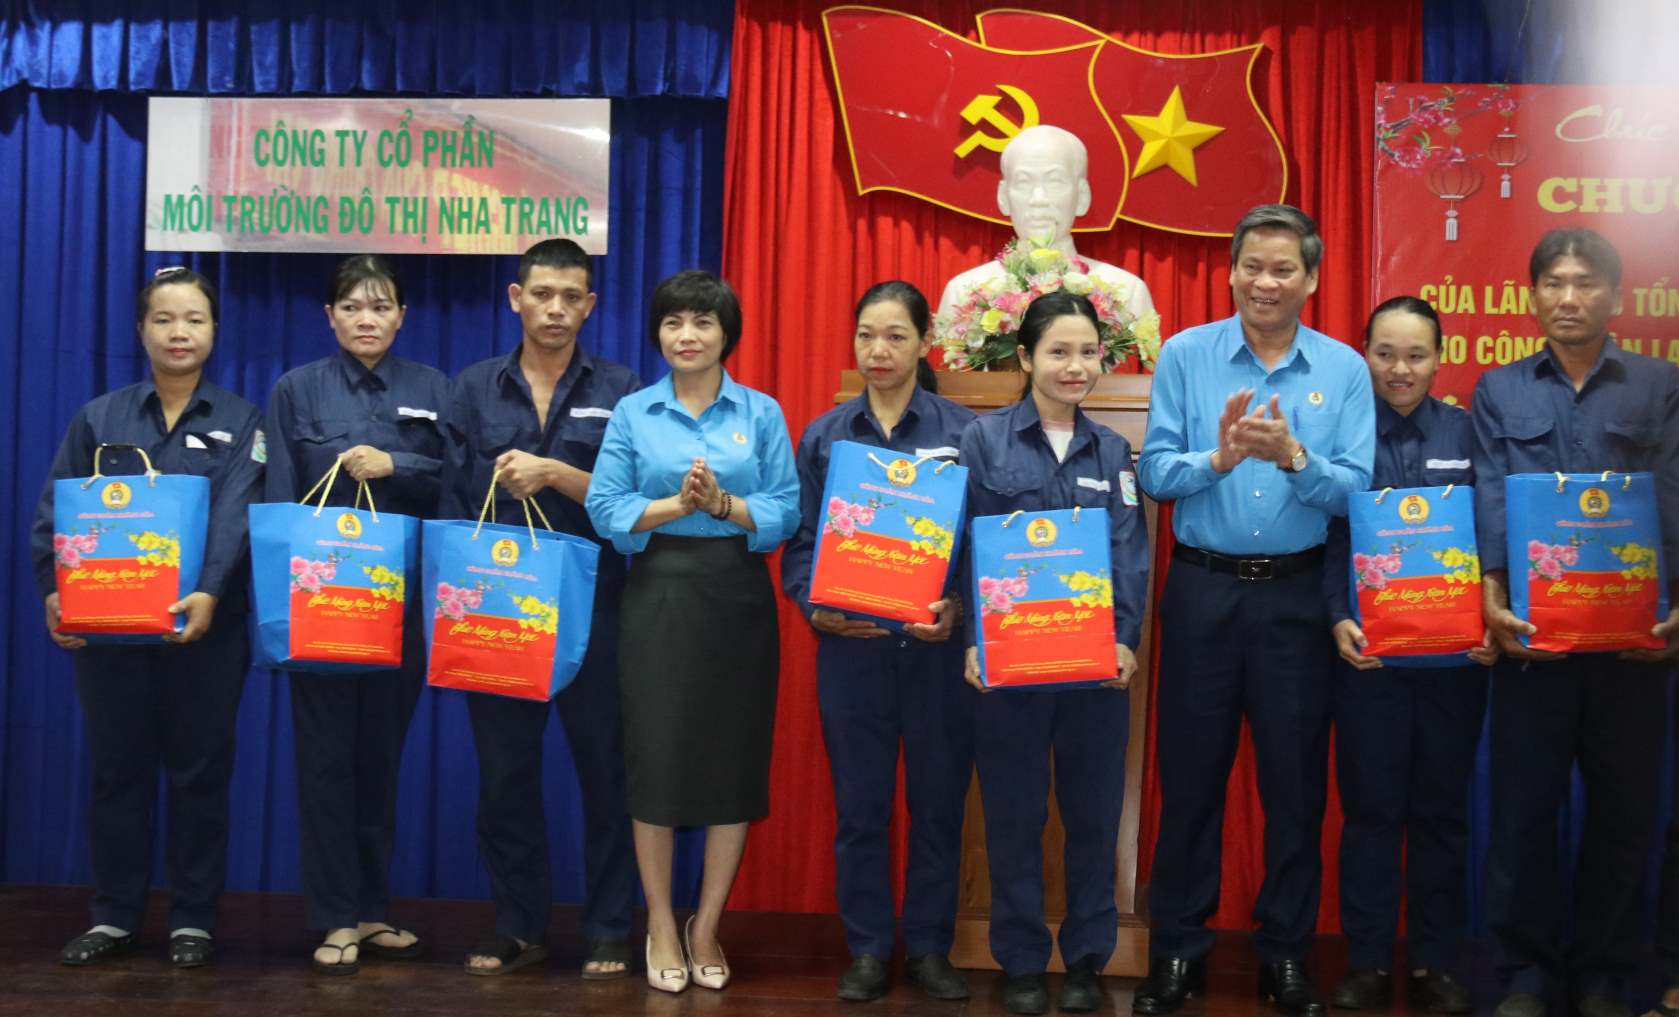 150 phần quà Tết Công đoàn cũng được Phó chủ tịch Tổng LĐLĐVN trao tận tay các công nhân vệ sinh môi trưởng ở Nha Trang. Ảnh: Phương Linh